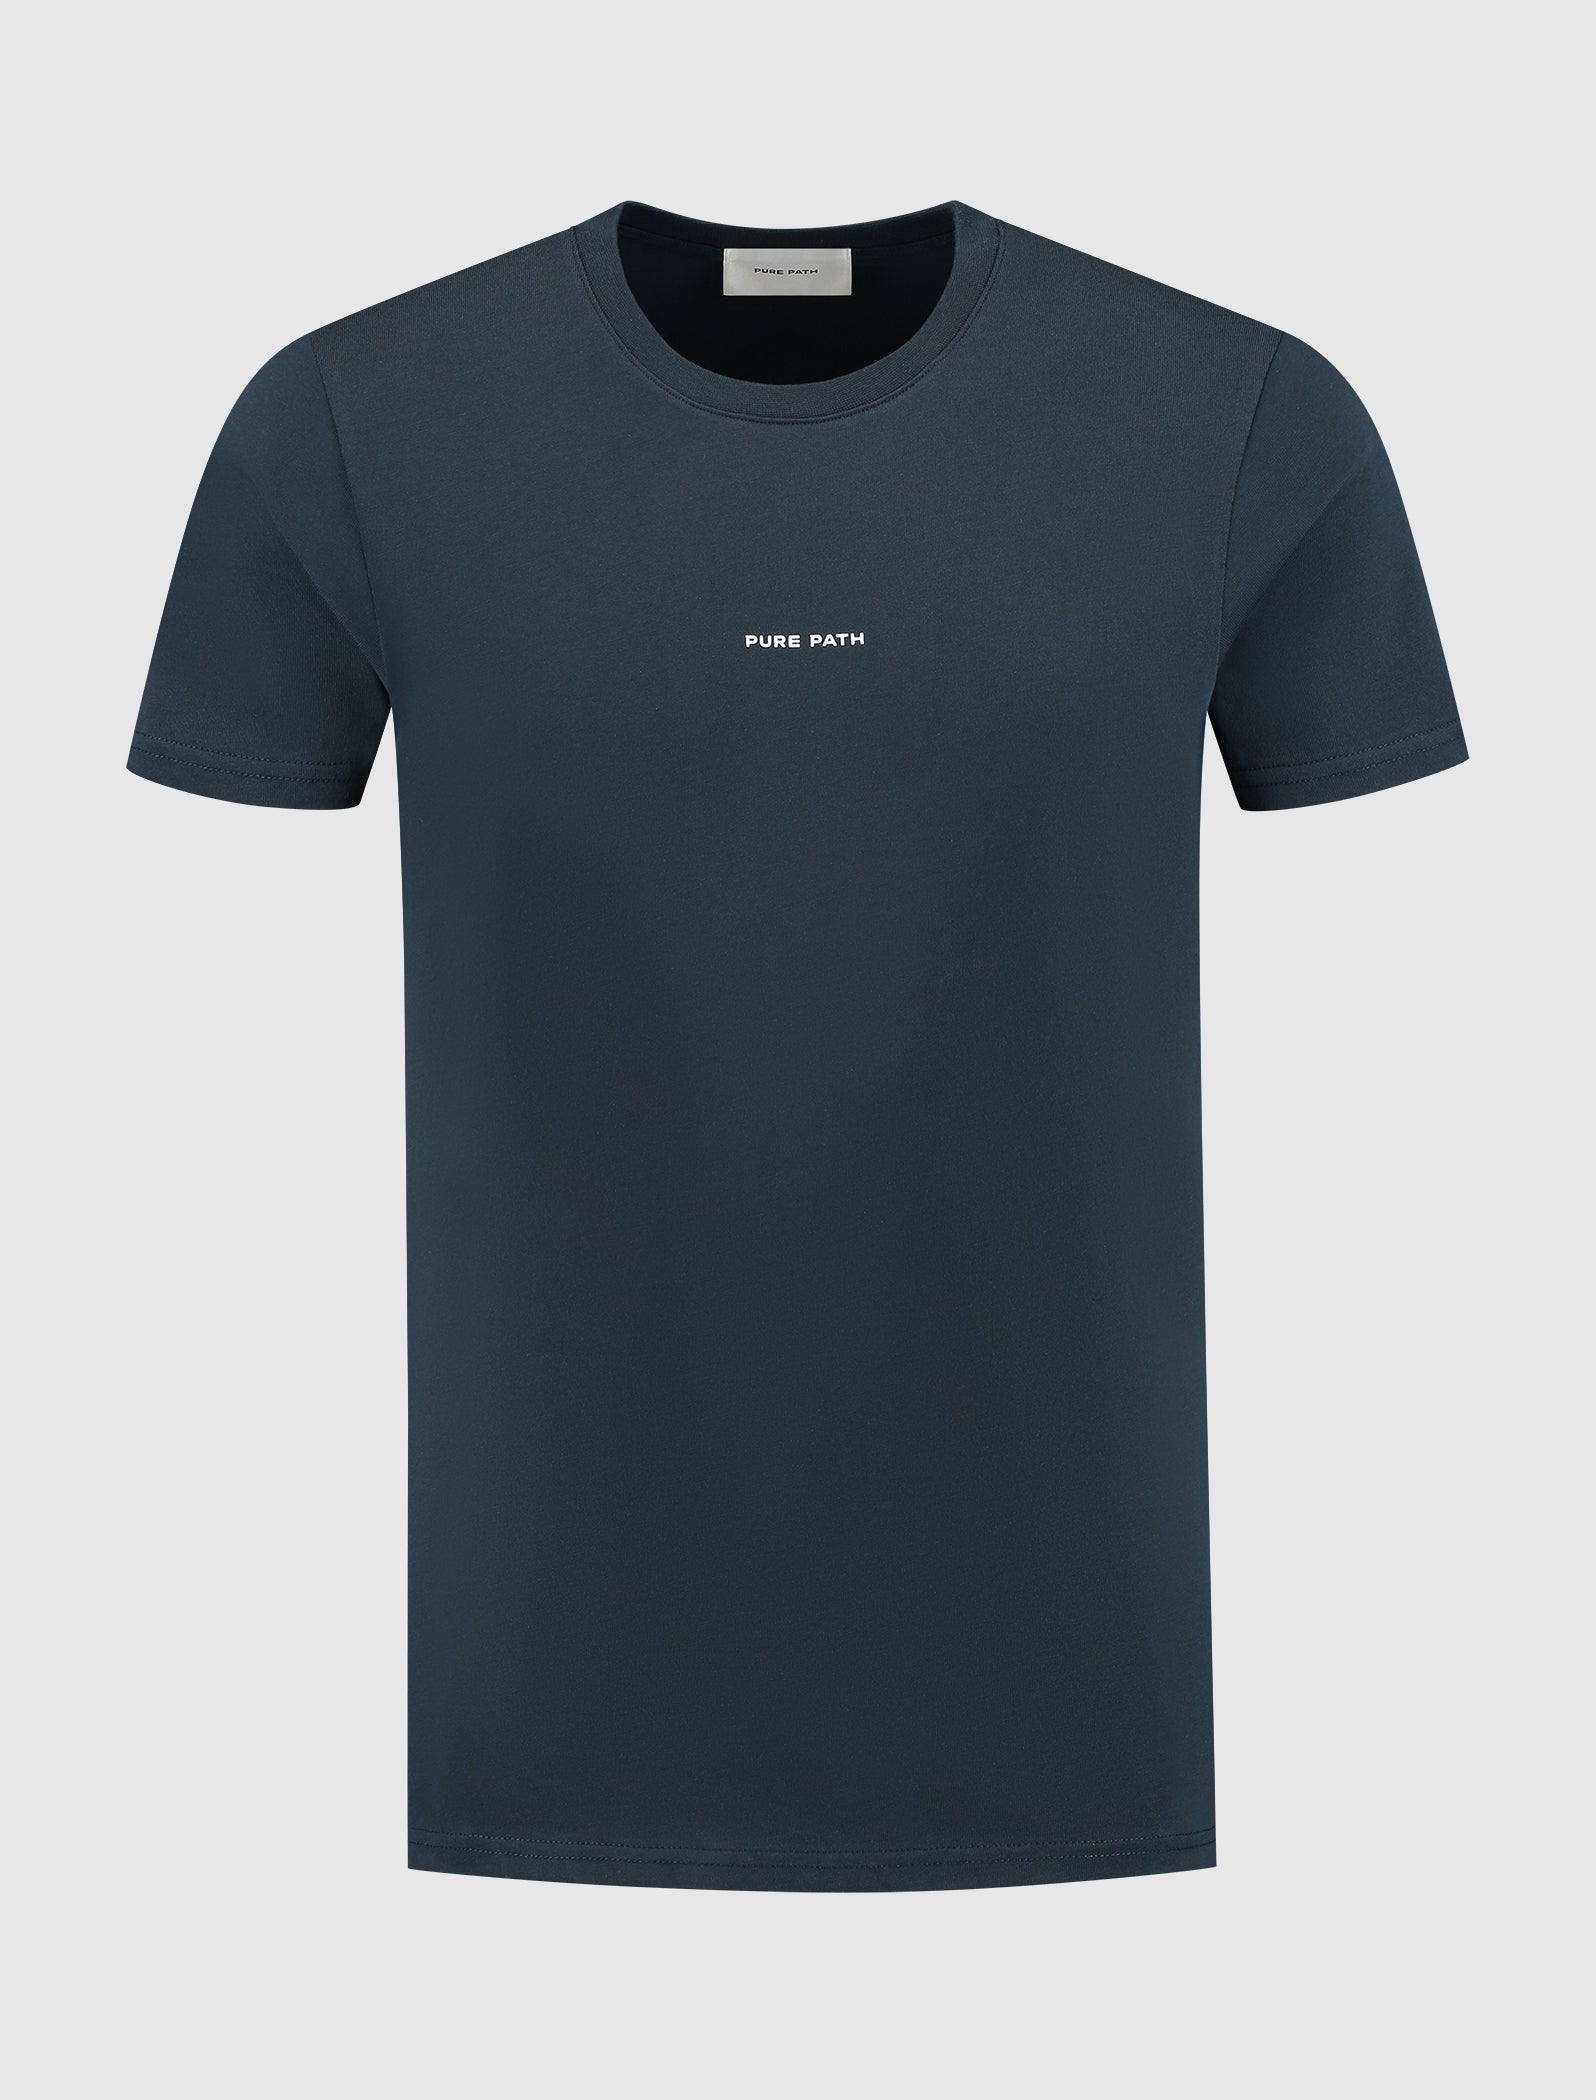 A New Era T-shirt | Navy